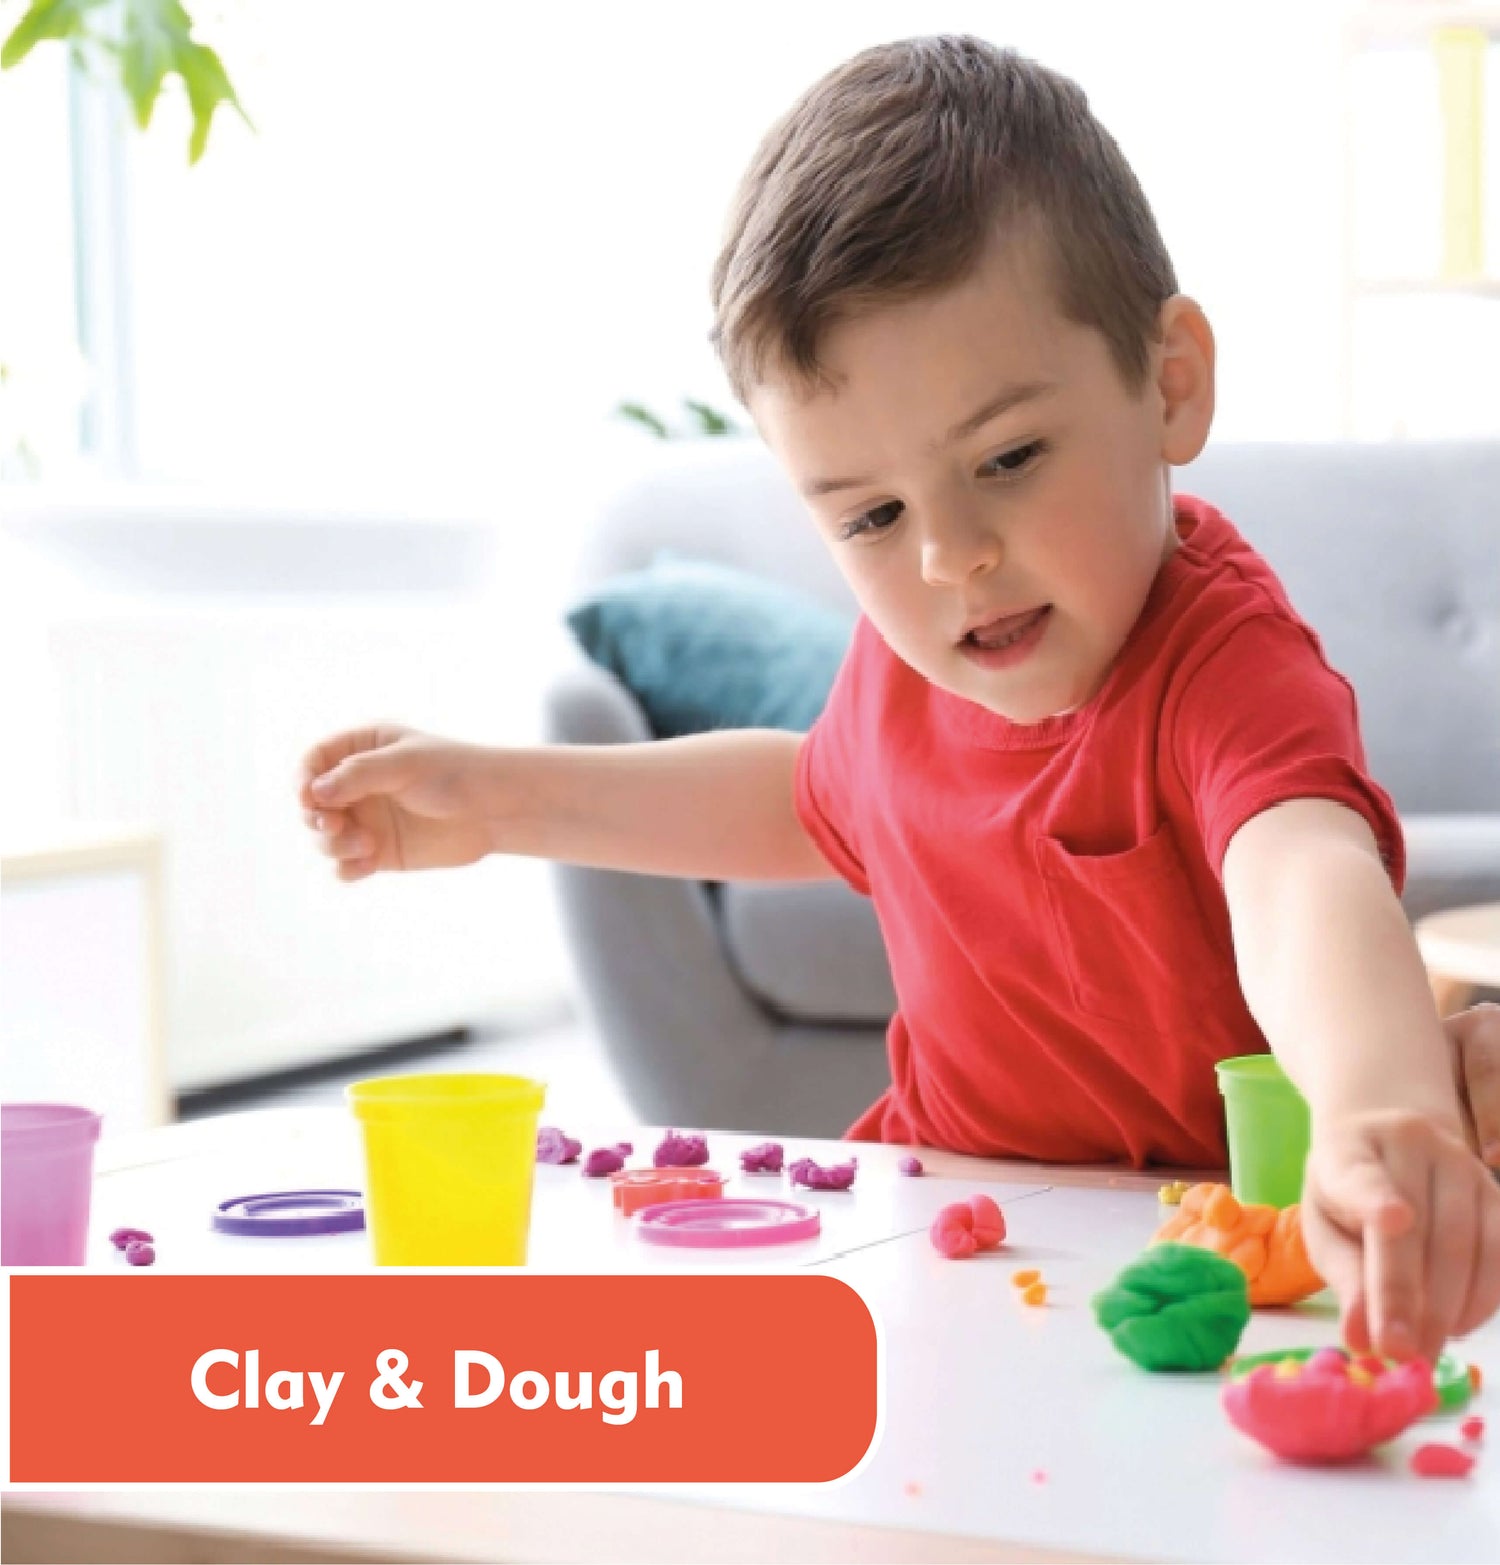 Clay & Dough